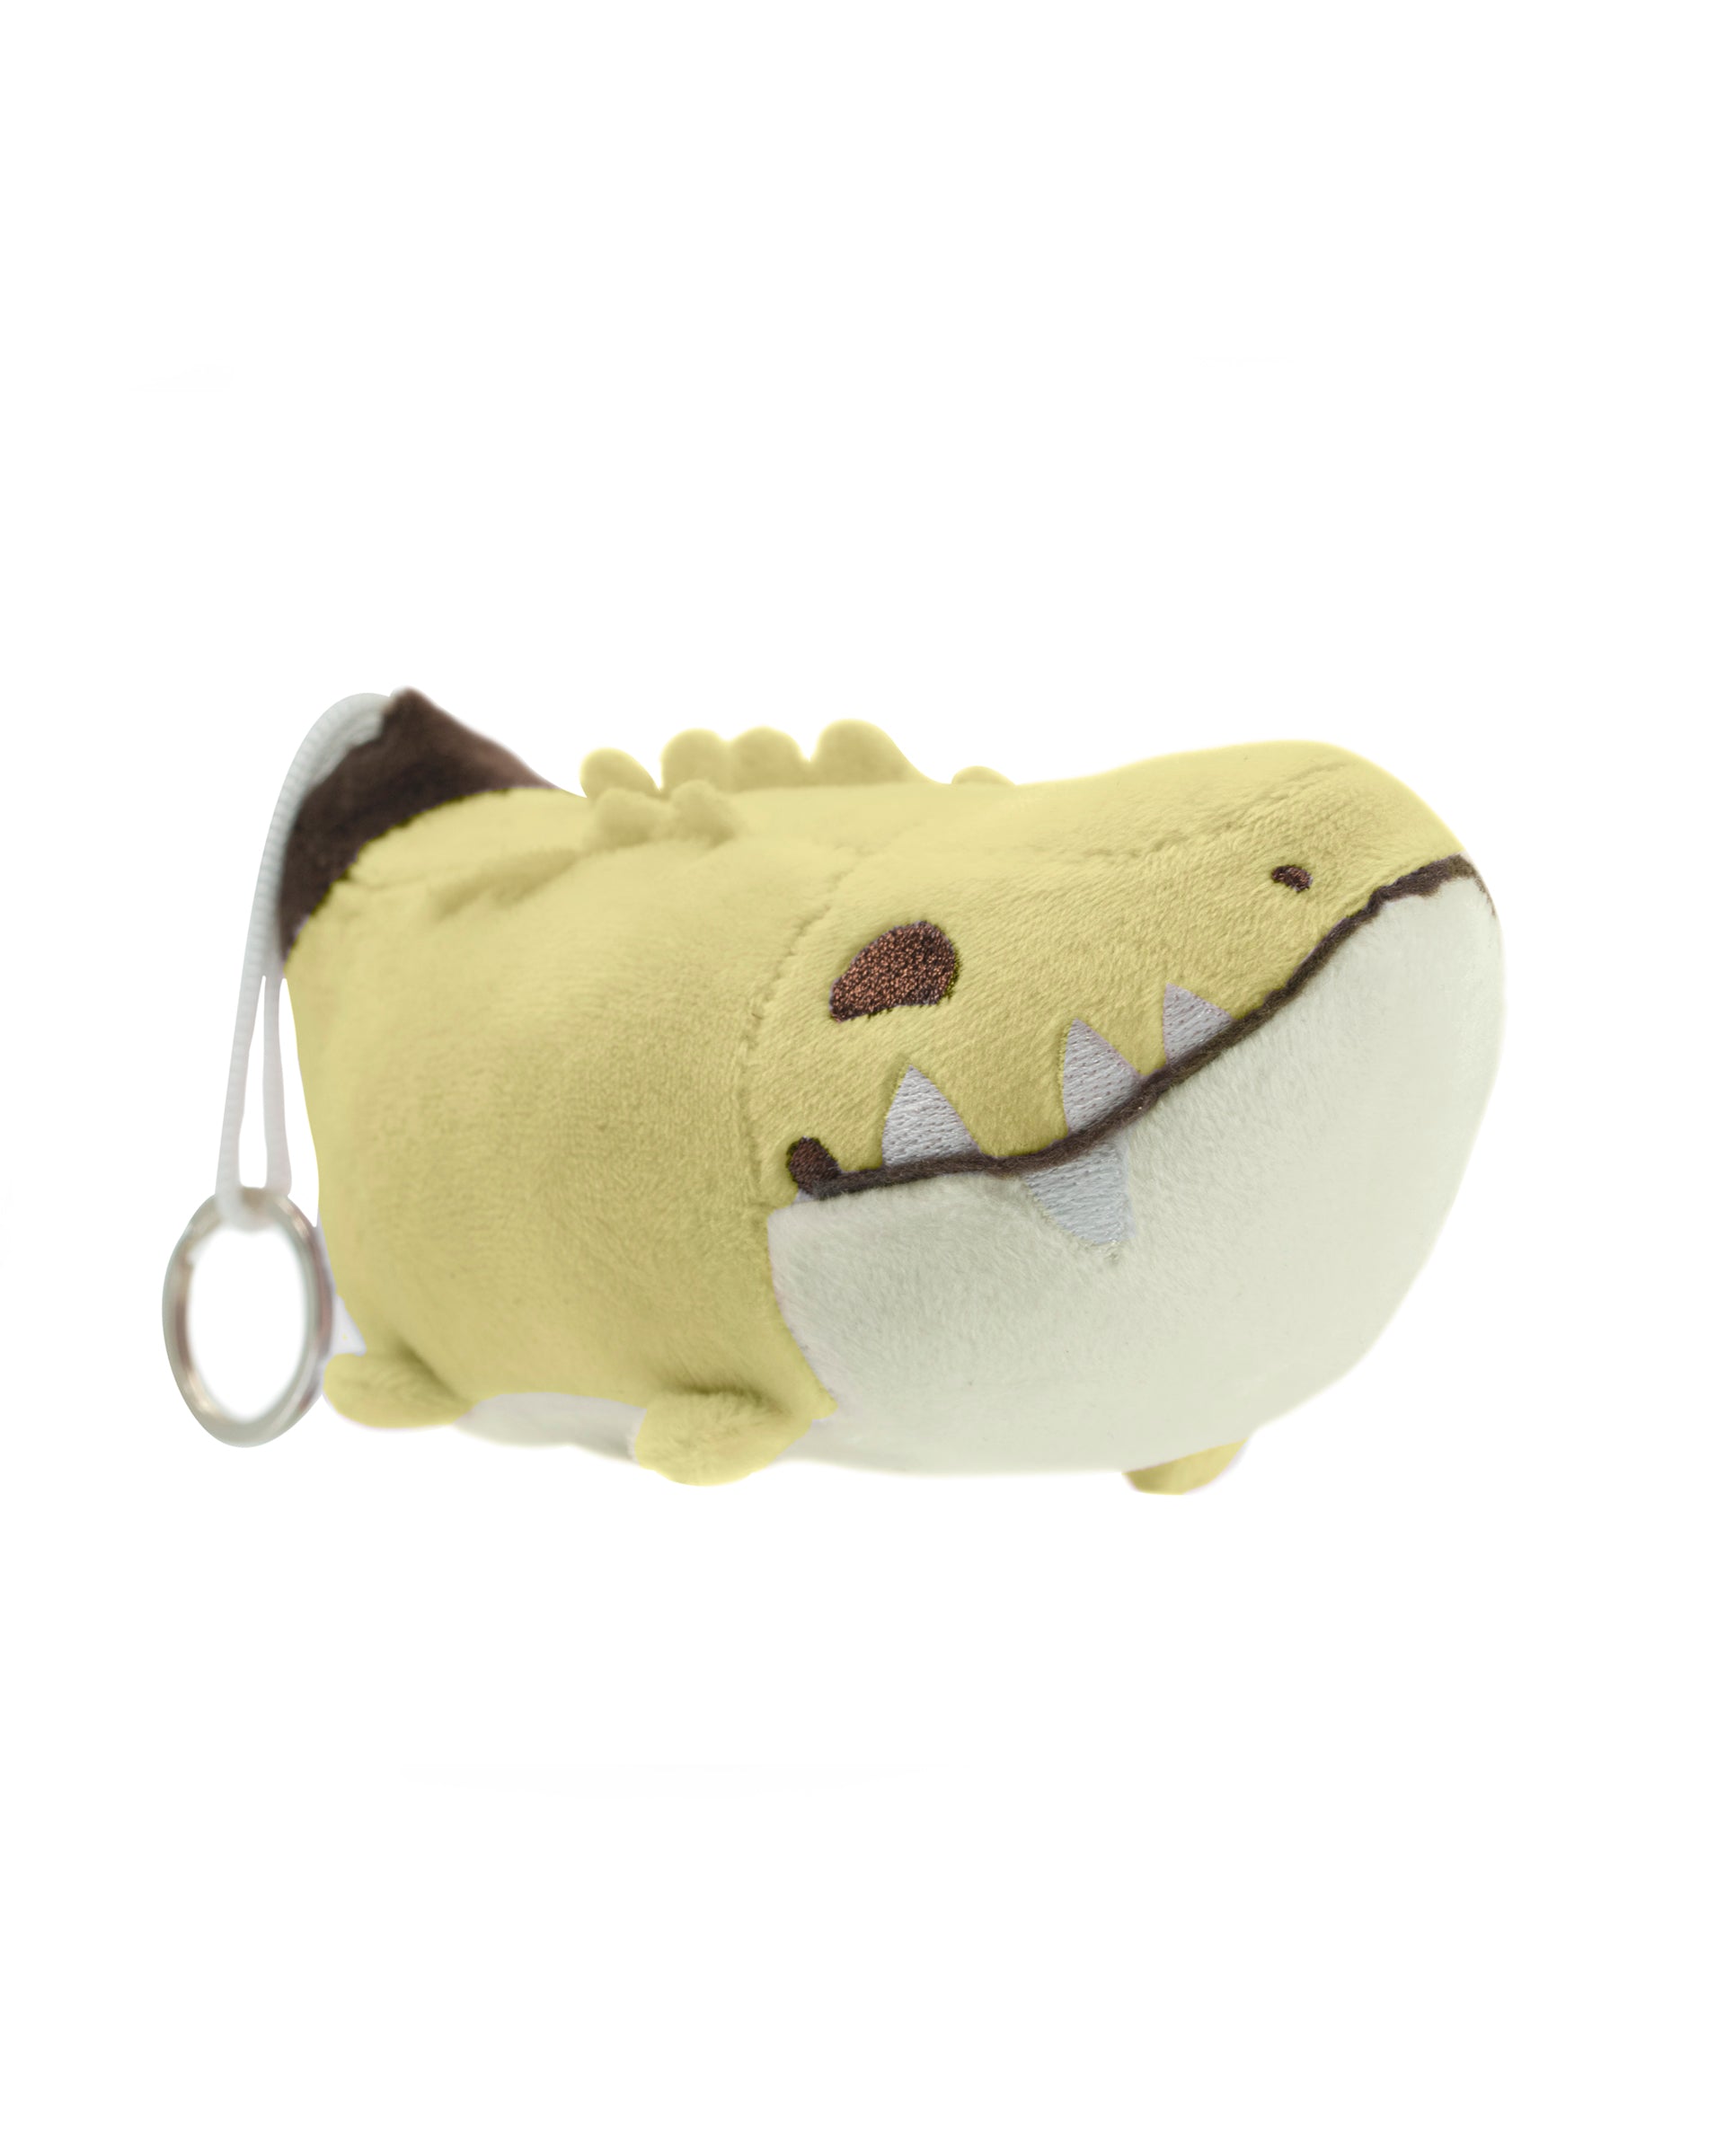 banana crocodile plush